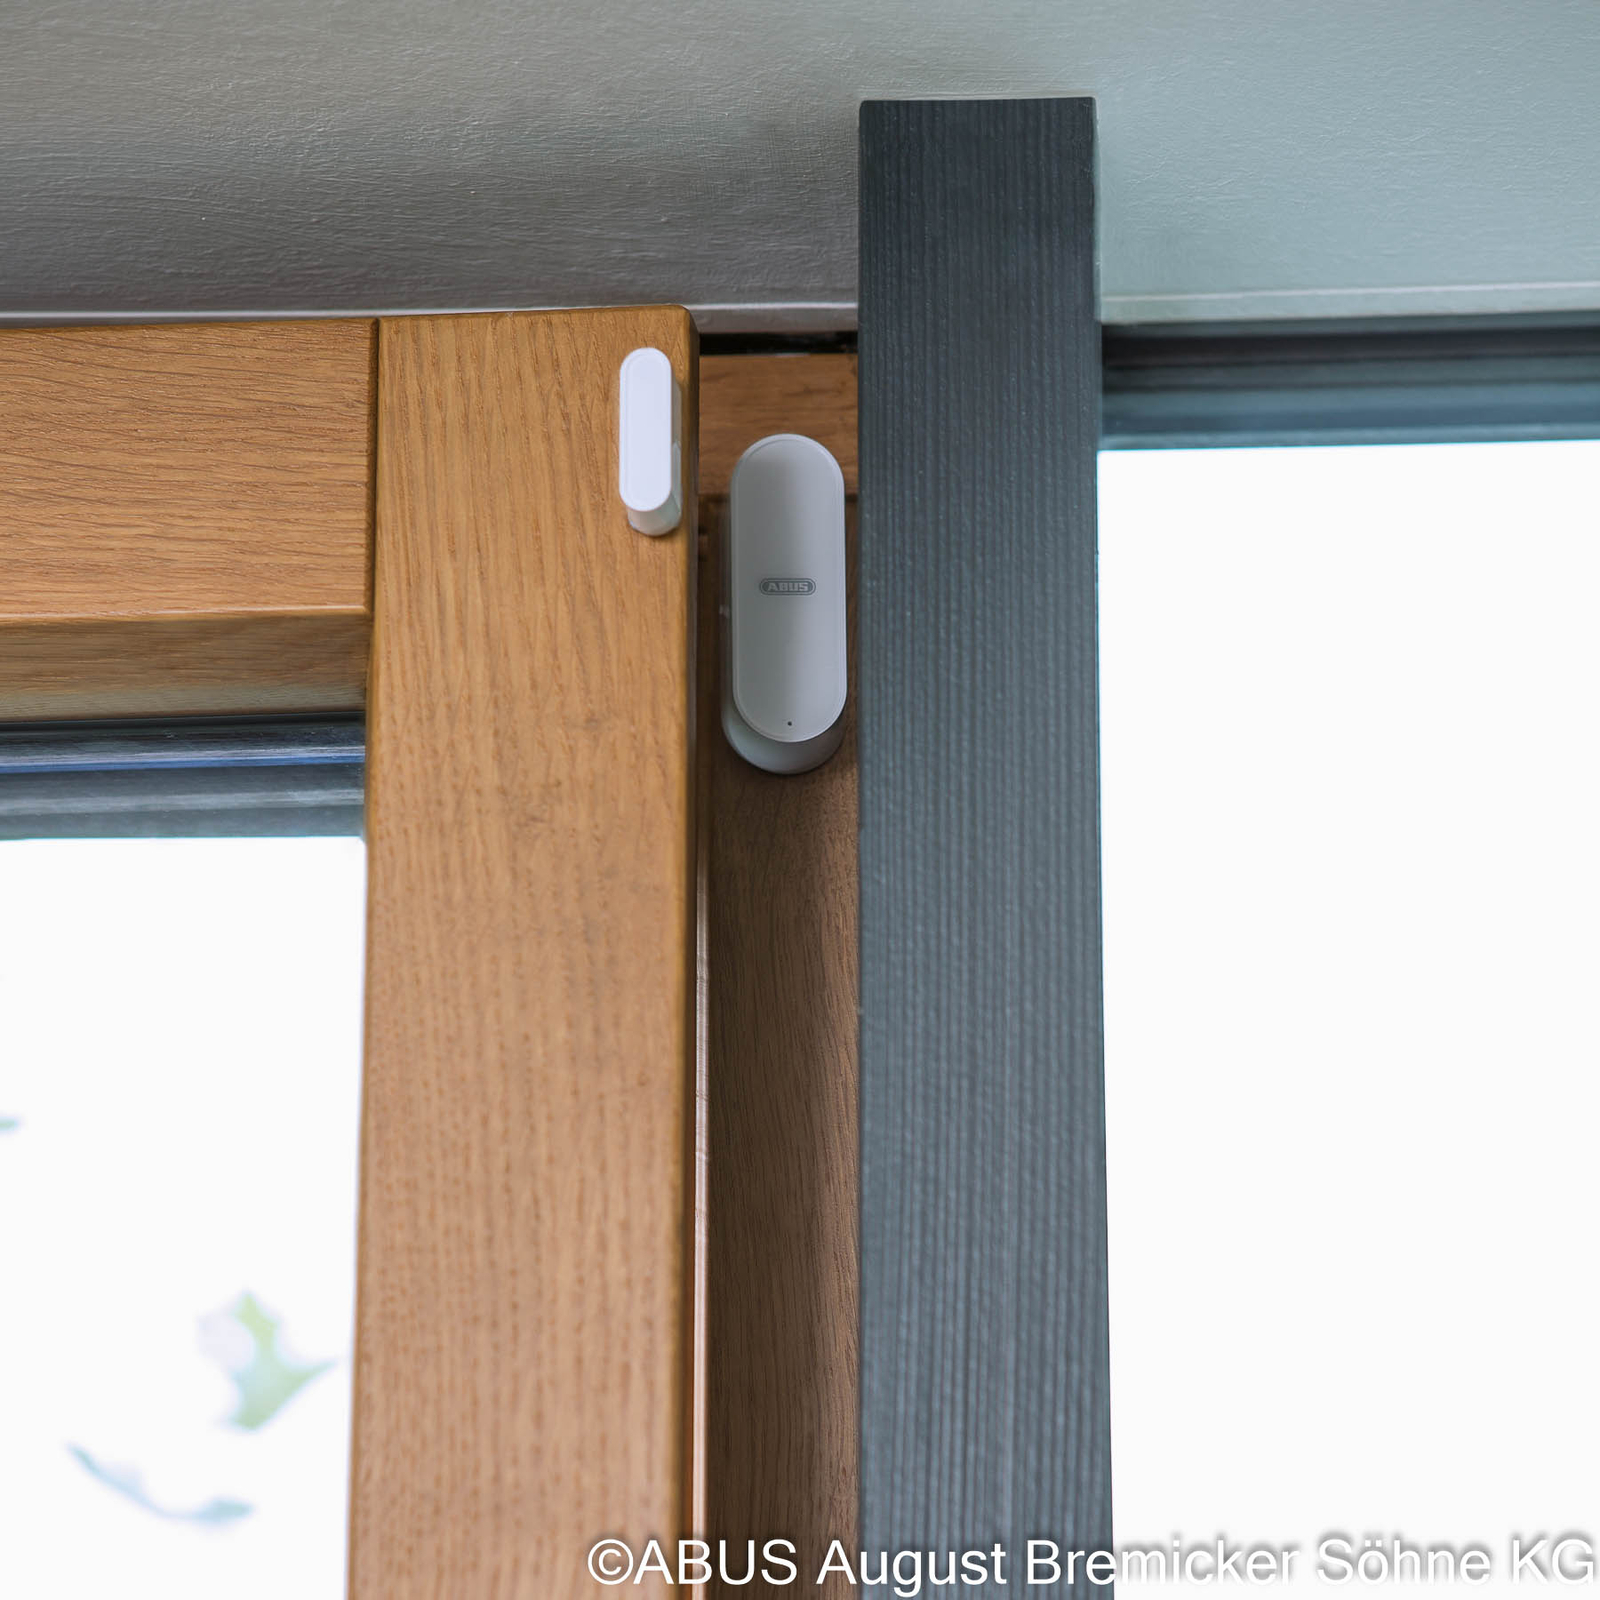 ABUS Z-Wave wireless door/window contact